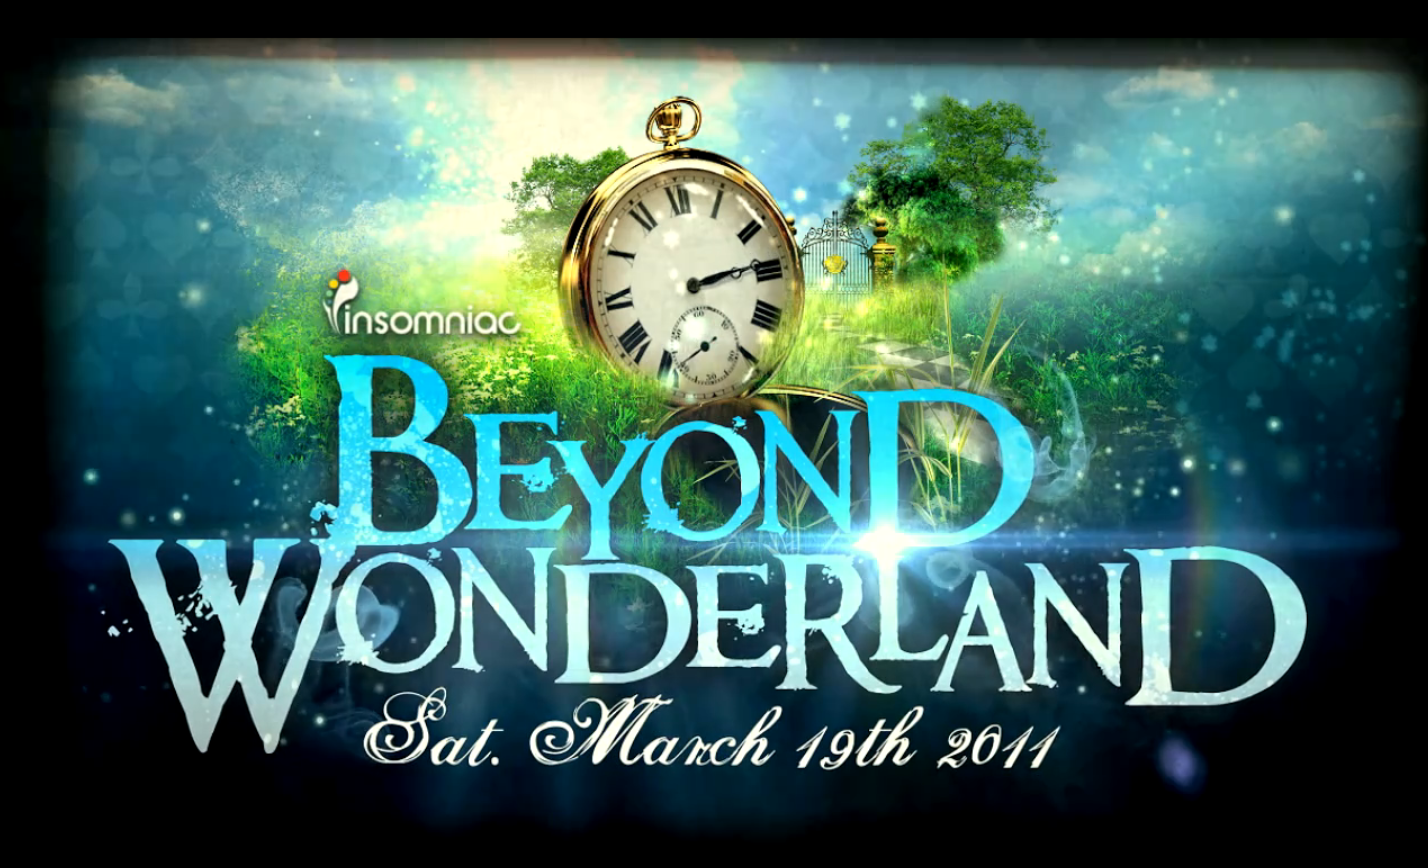 Adventures beyond wonderland